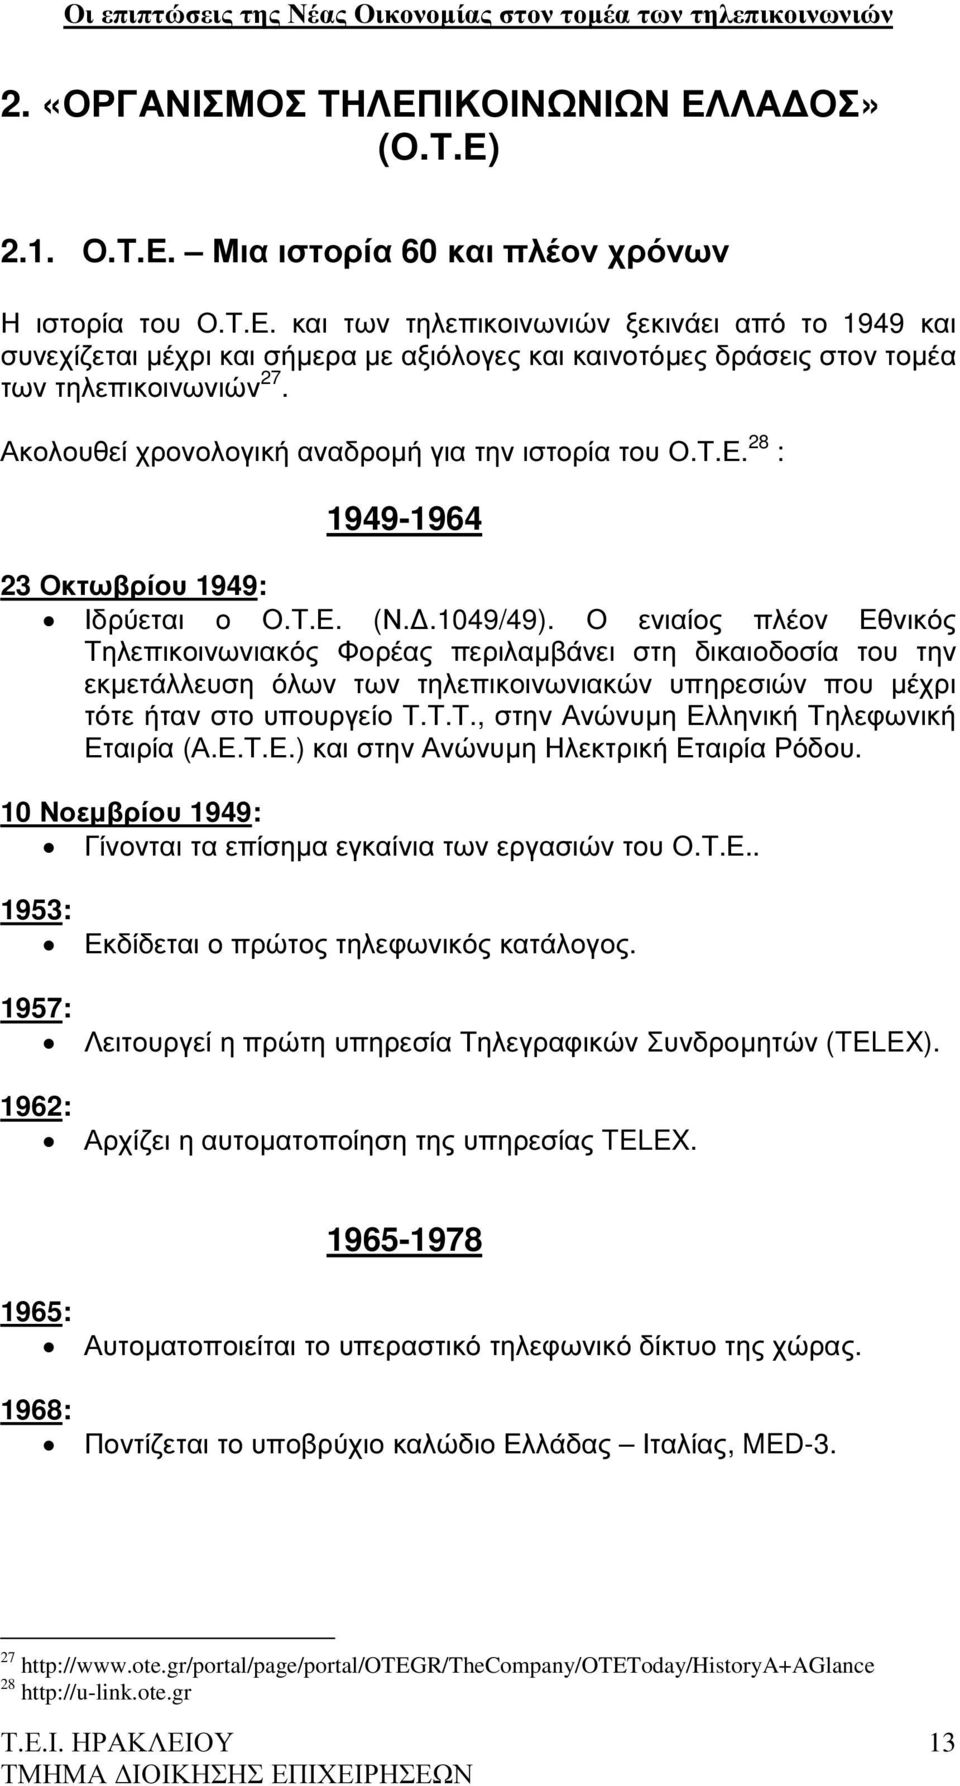 Ο ενιαίος πλέον Εθνικός Τηλεπικοινωνιακός Φορέας περιλαµβάνει στη δικαιοδοσία του την εκµετάλλευση όλων των τηλεπικοινωνιακών υπηρεσιών που µέχρι τότε ήταν στο υπουργείο Τ.Τ.Τ., στην Ανώνυµη Ελληνική Τηλεφωνική Εταιρία (Α.